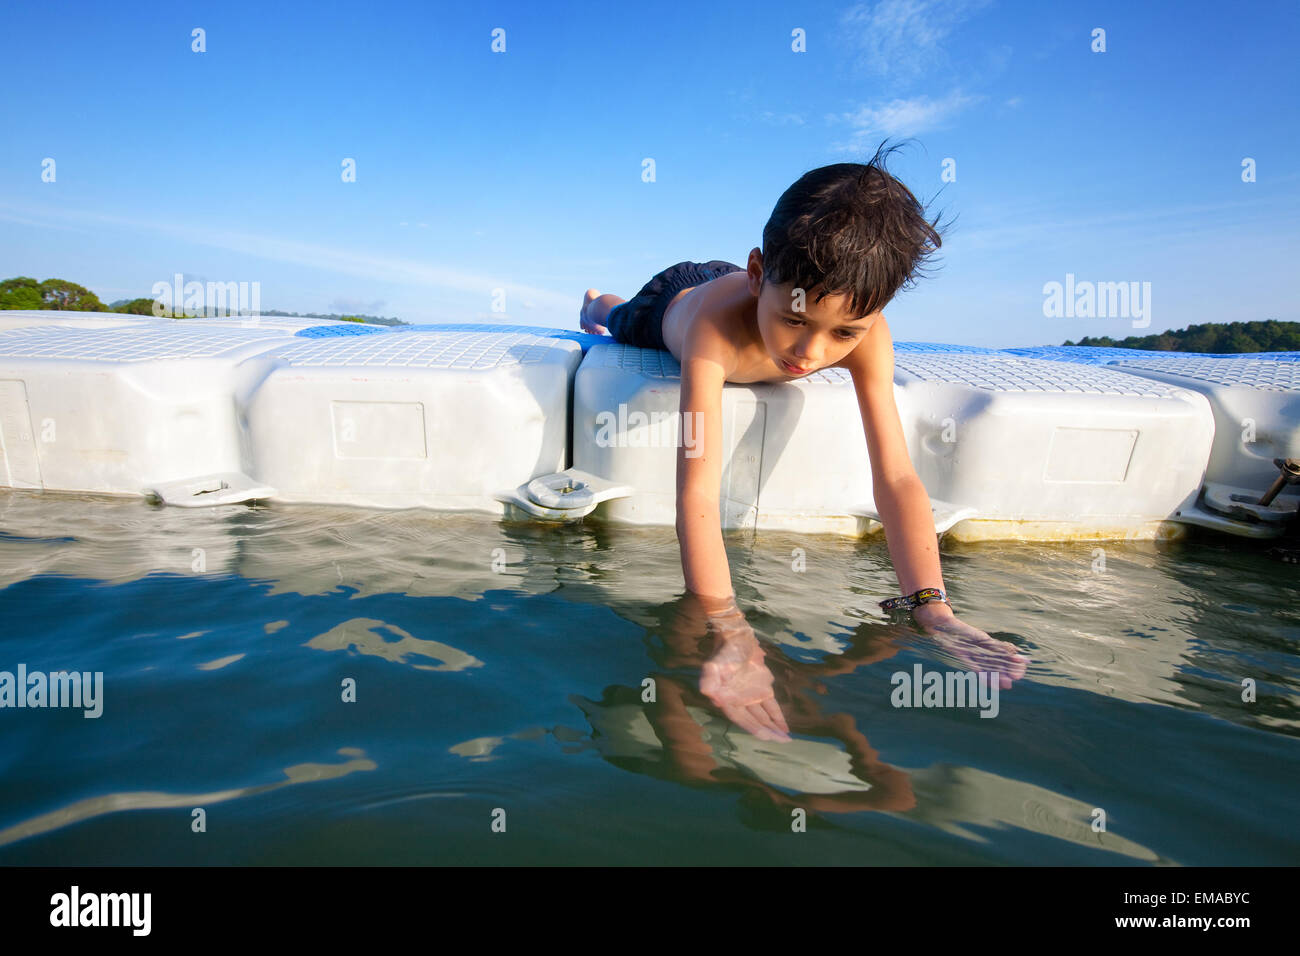 Jeune garçon jouant dans la mer sur une plate-forme flottante Banque D'Images